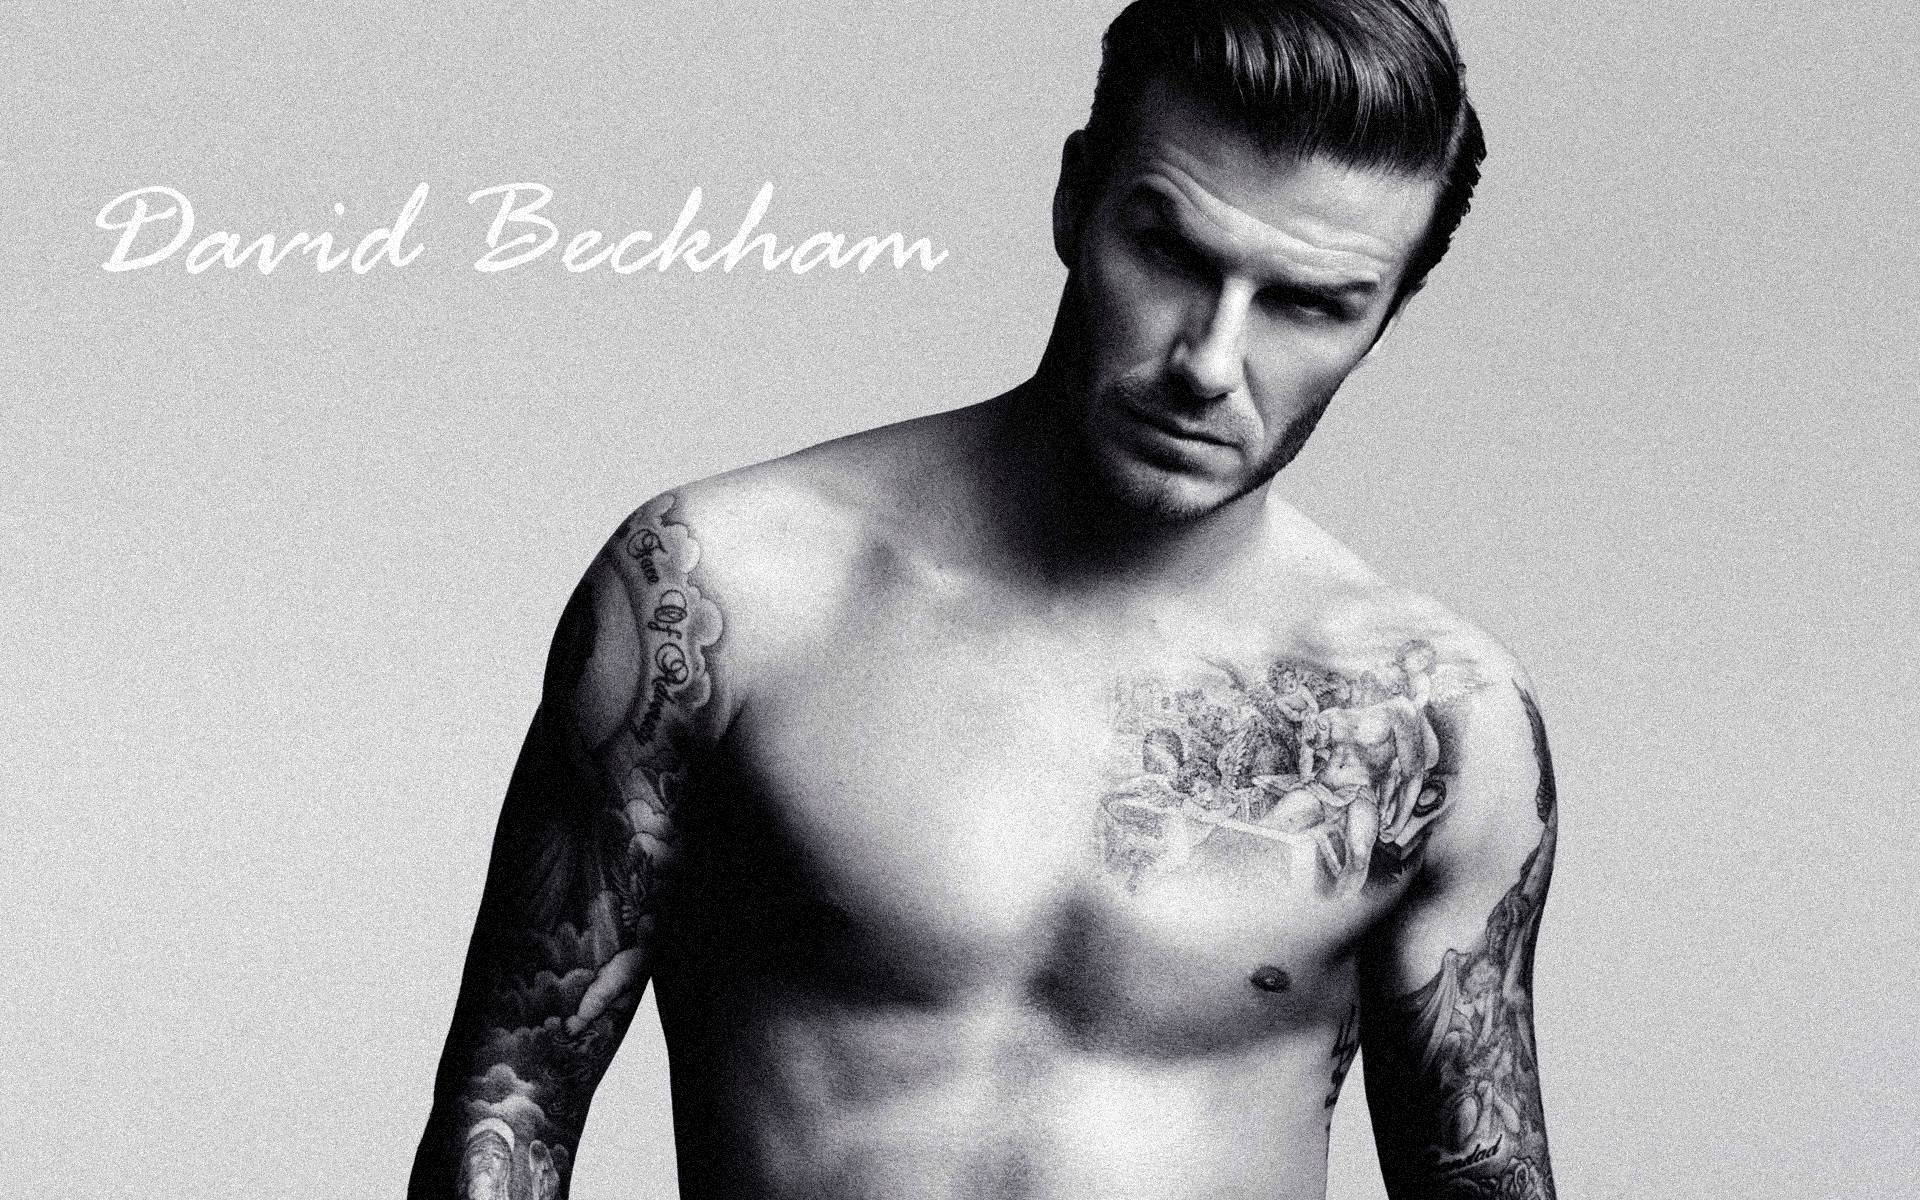 David Beckham - Iconic Footballer Background